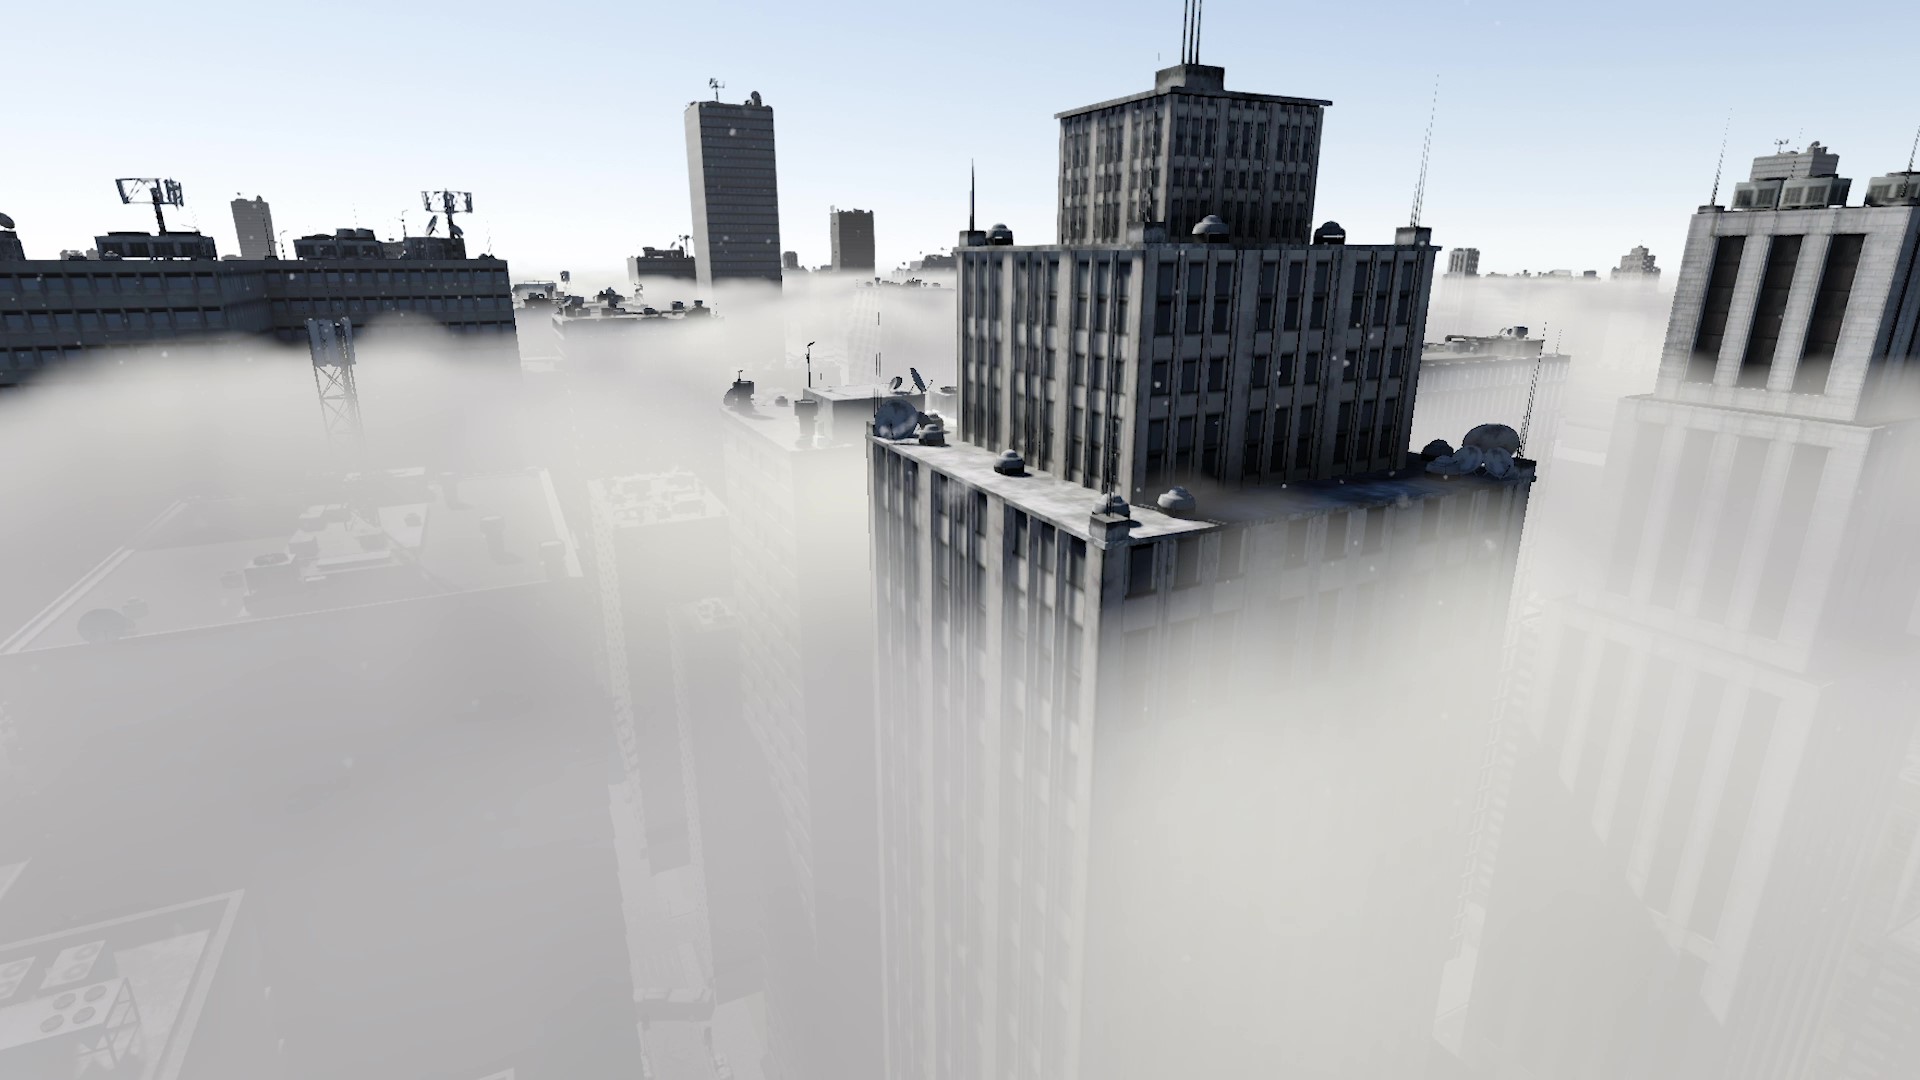 生存策略游戏《流亡云端》 — 在高空中 重建家园